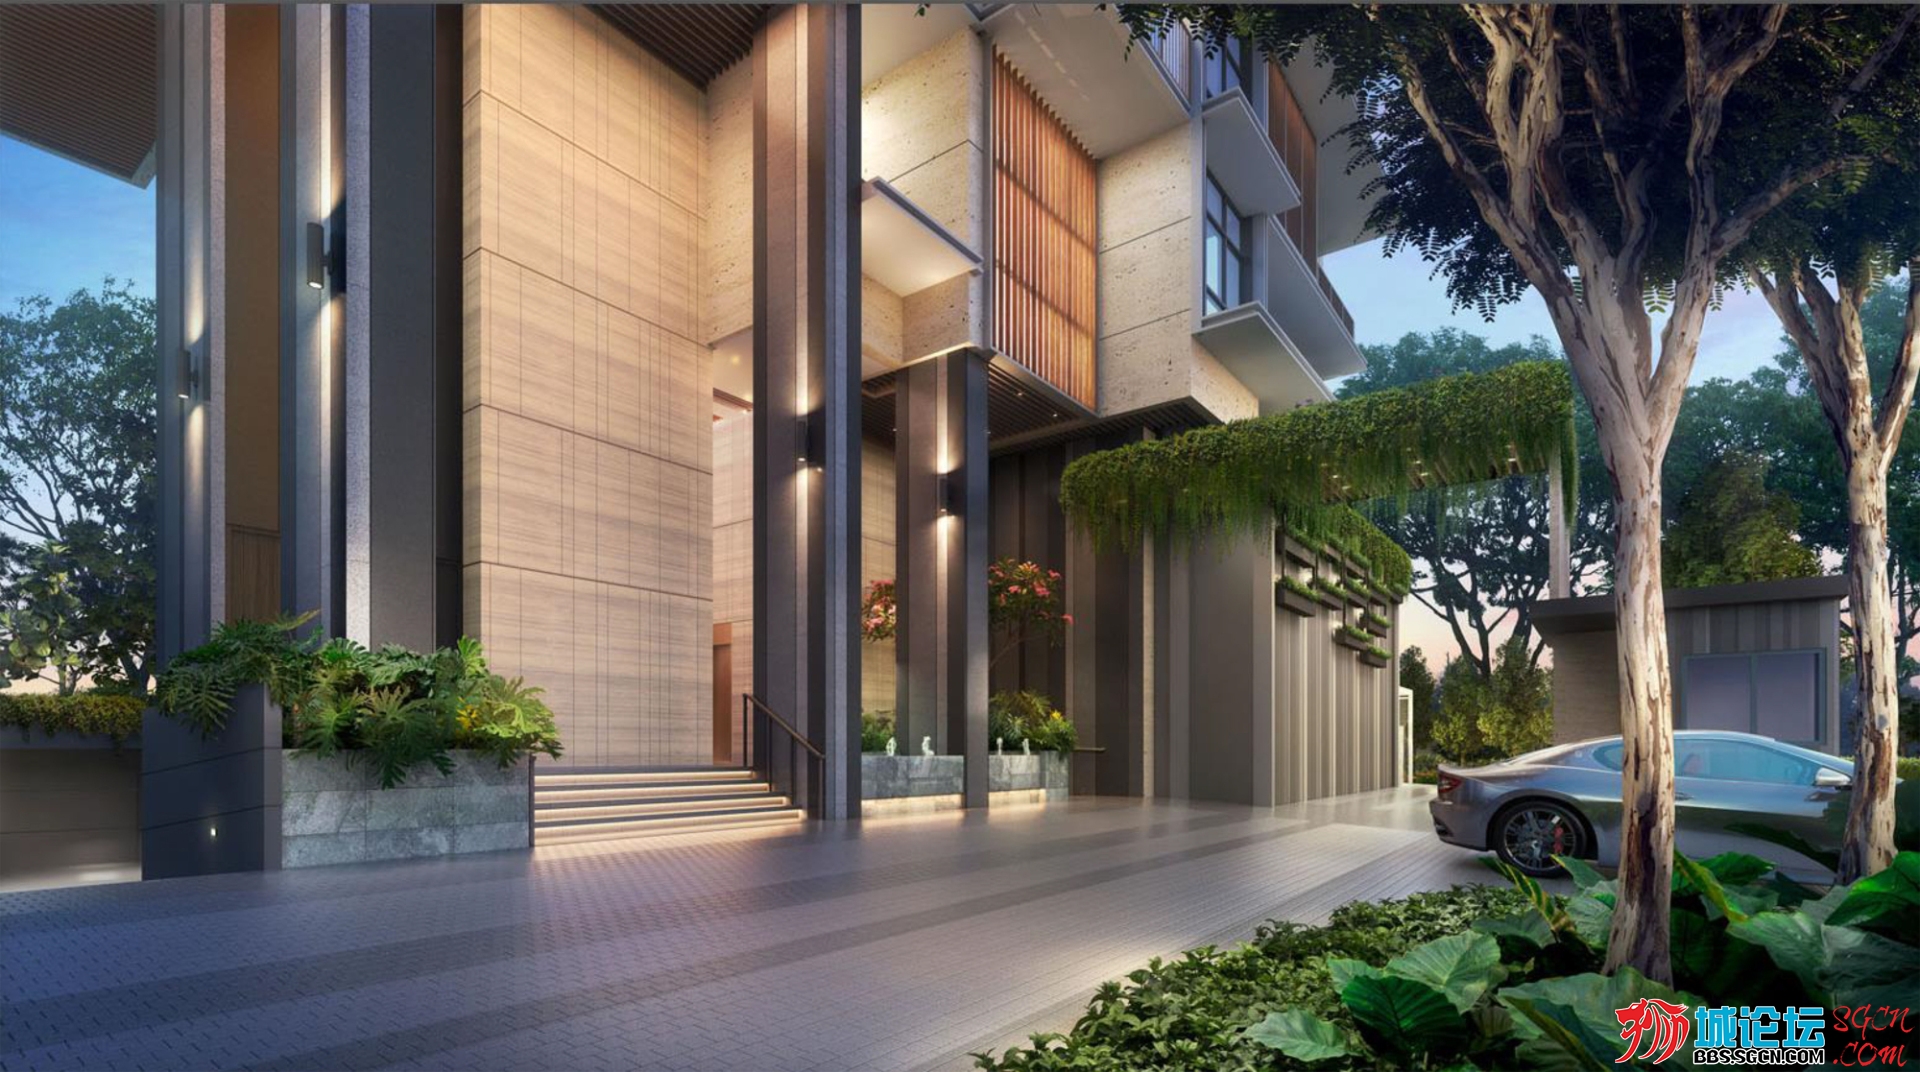 sanctury-at-newton-photo-singapore-new-launch-condominium-10b60471391d75379f0cfa.jpg